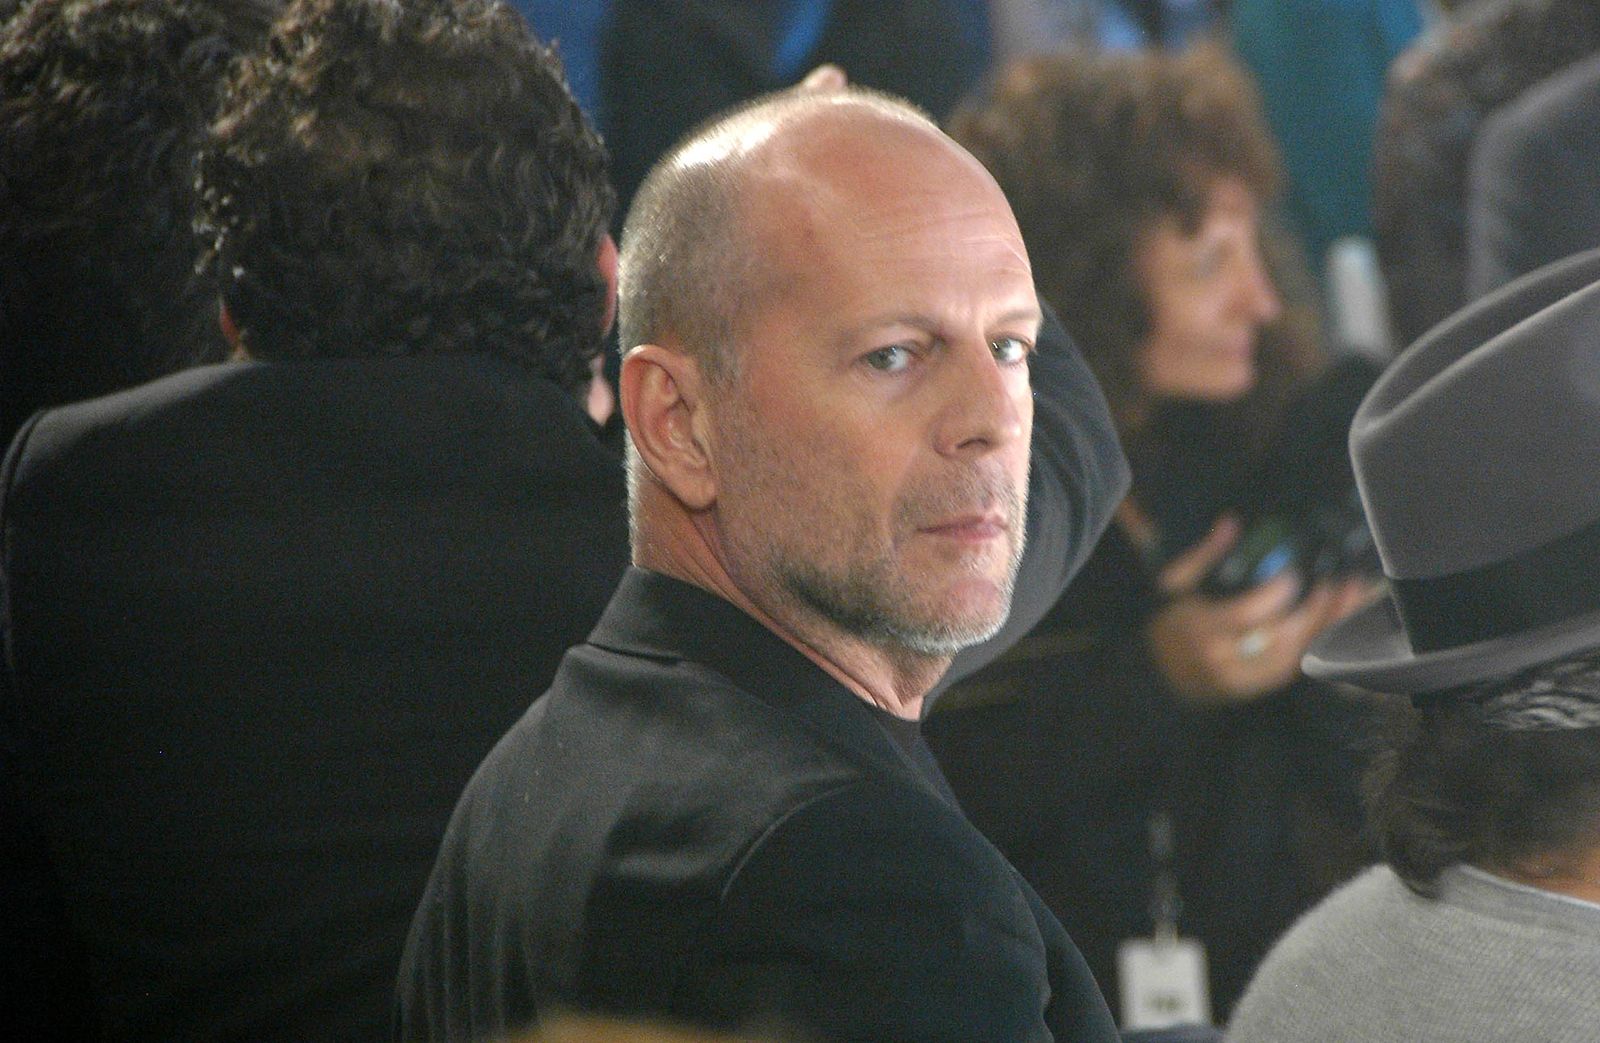 Demencia frontotemporal: así es la devastadora enfermedad que acaban de diagnosticar a Bruce Willis